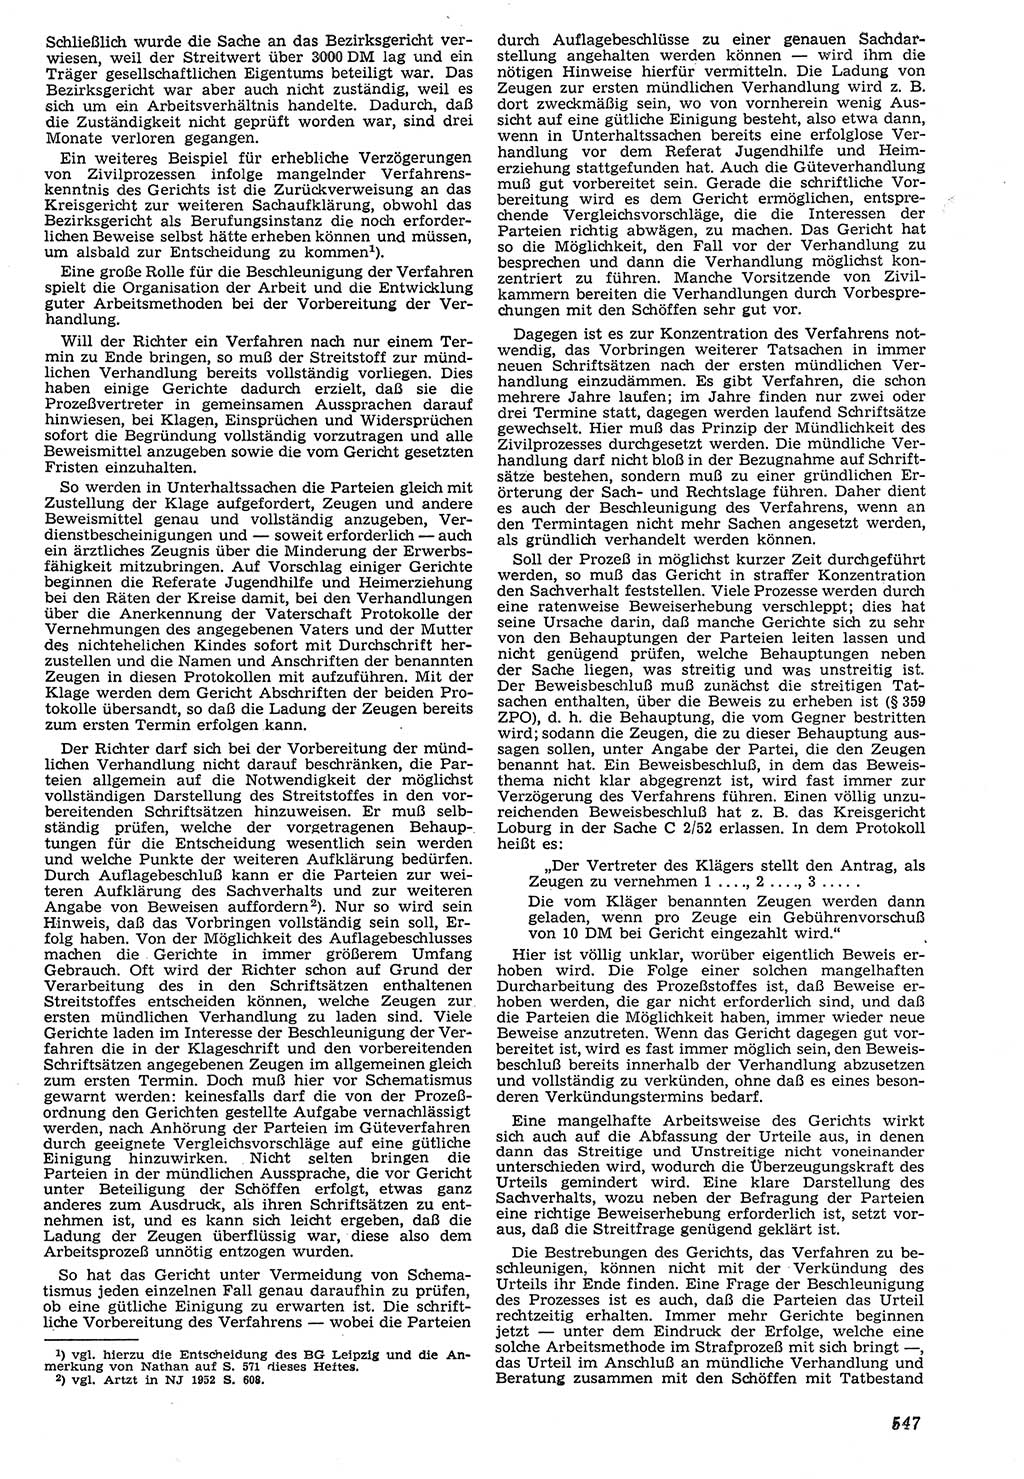 Neue Justiz (NJ), Zeitschrift für Recht und Rechtswissenschaft [Deutsche Demokratische Republik (DDR)], 7. Jahrgang 1953, Seite 547 (NJ DDR 1953, S. 547)